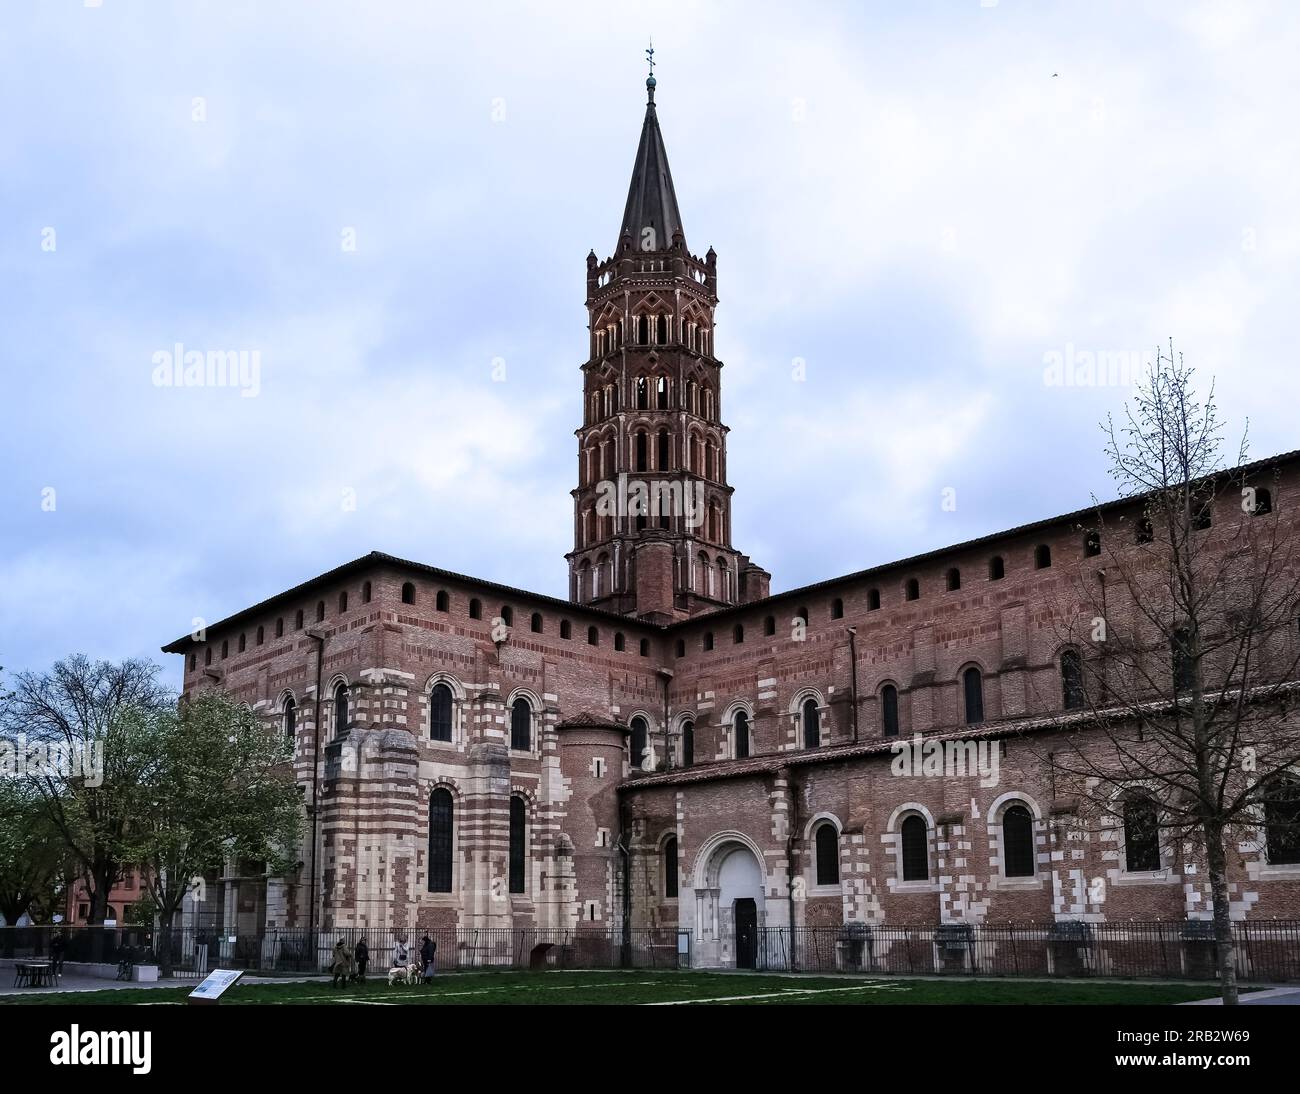 Dettaglio architettonico della basilica di Saint-Sernin, una chiesa a Tolosa, in Francia, ed ex chiesa abbaziale dell'abbazia di Saint-Sernin Foto Stock